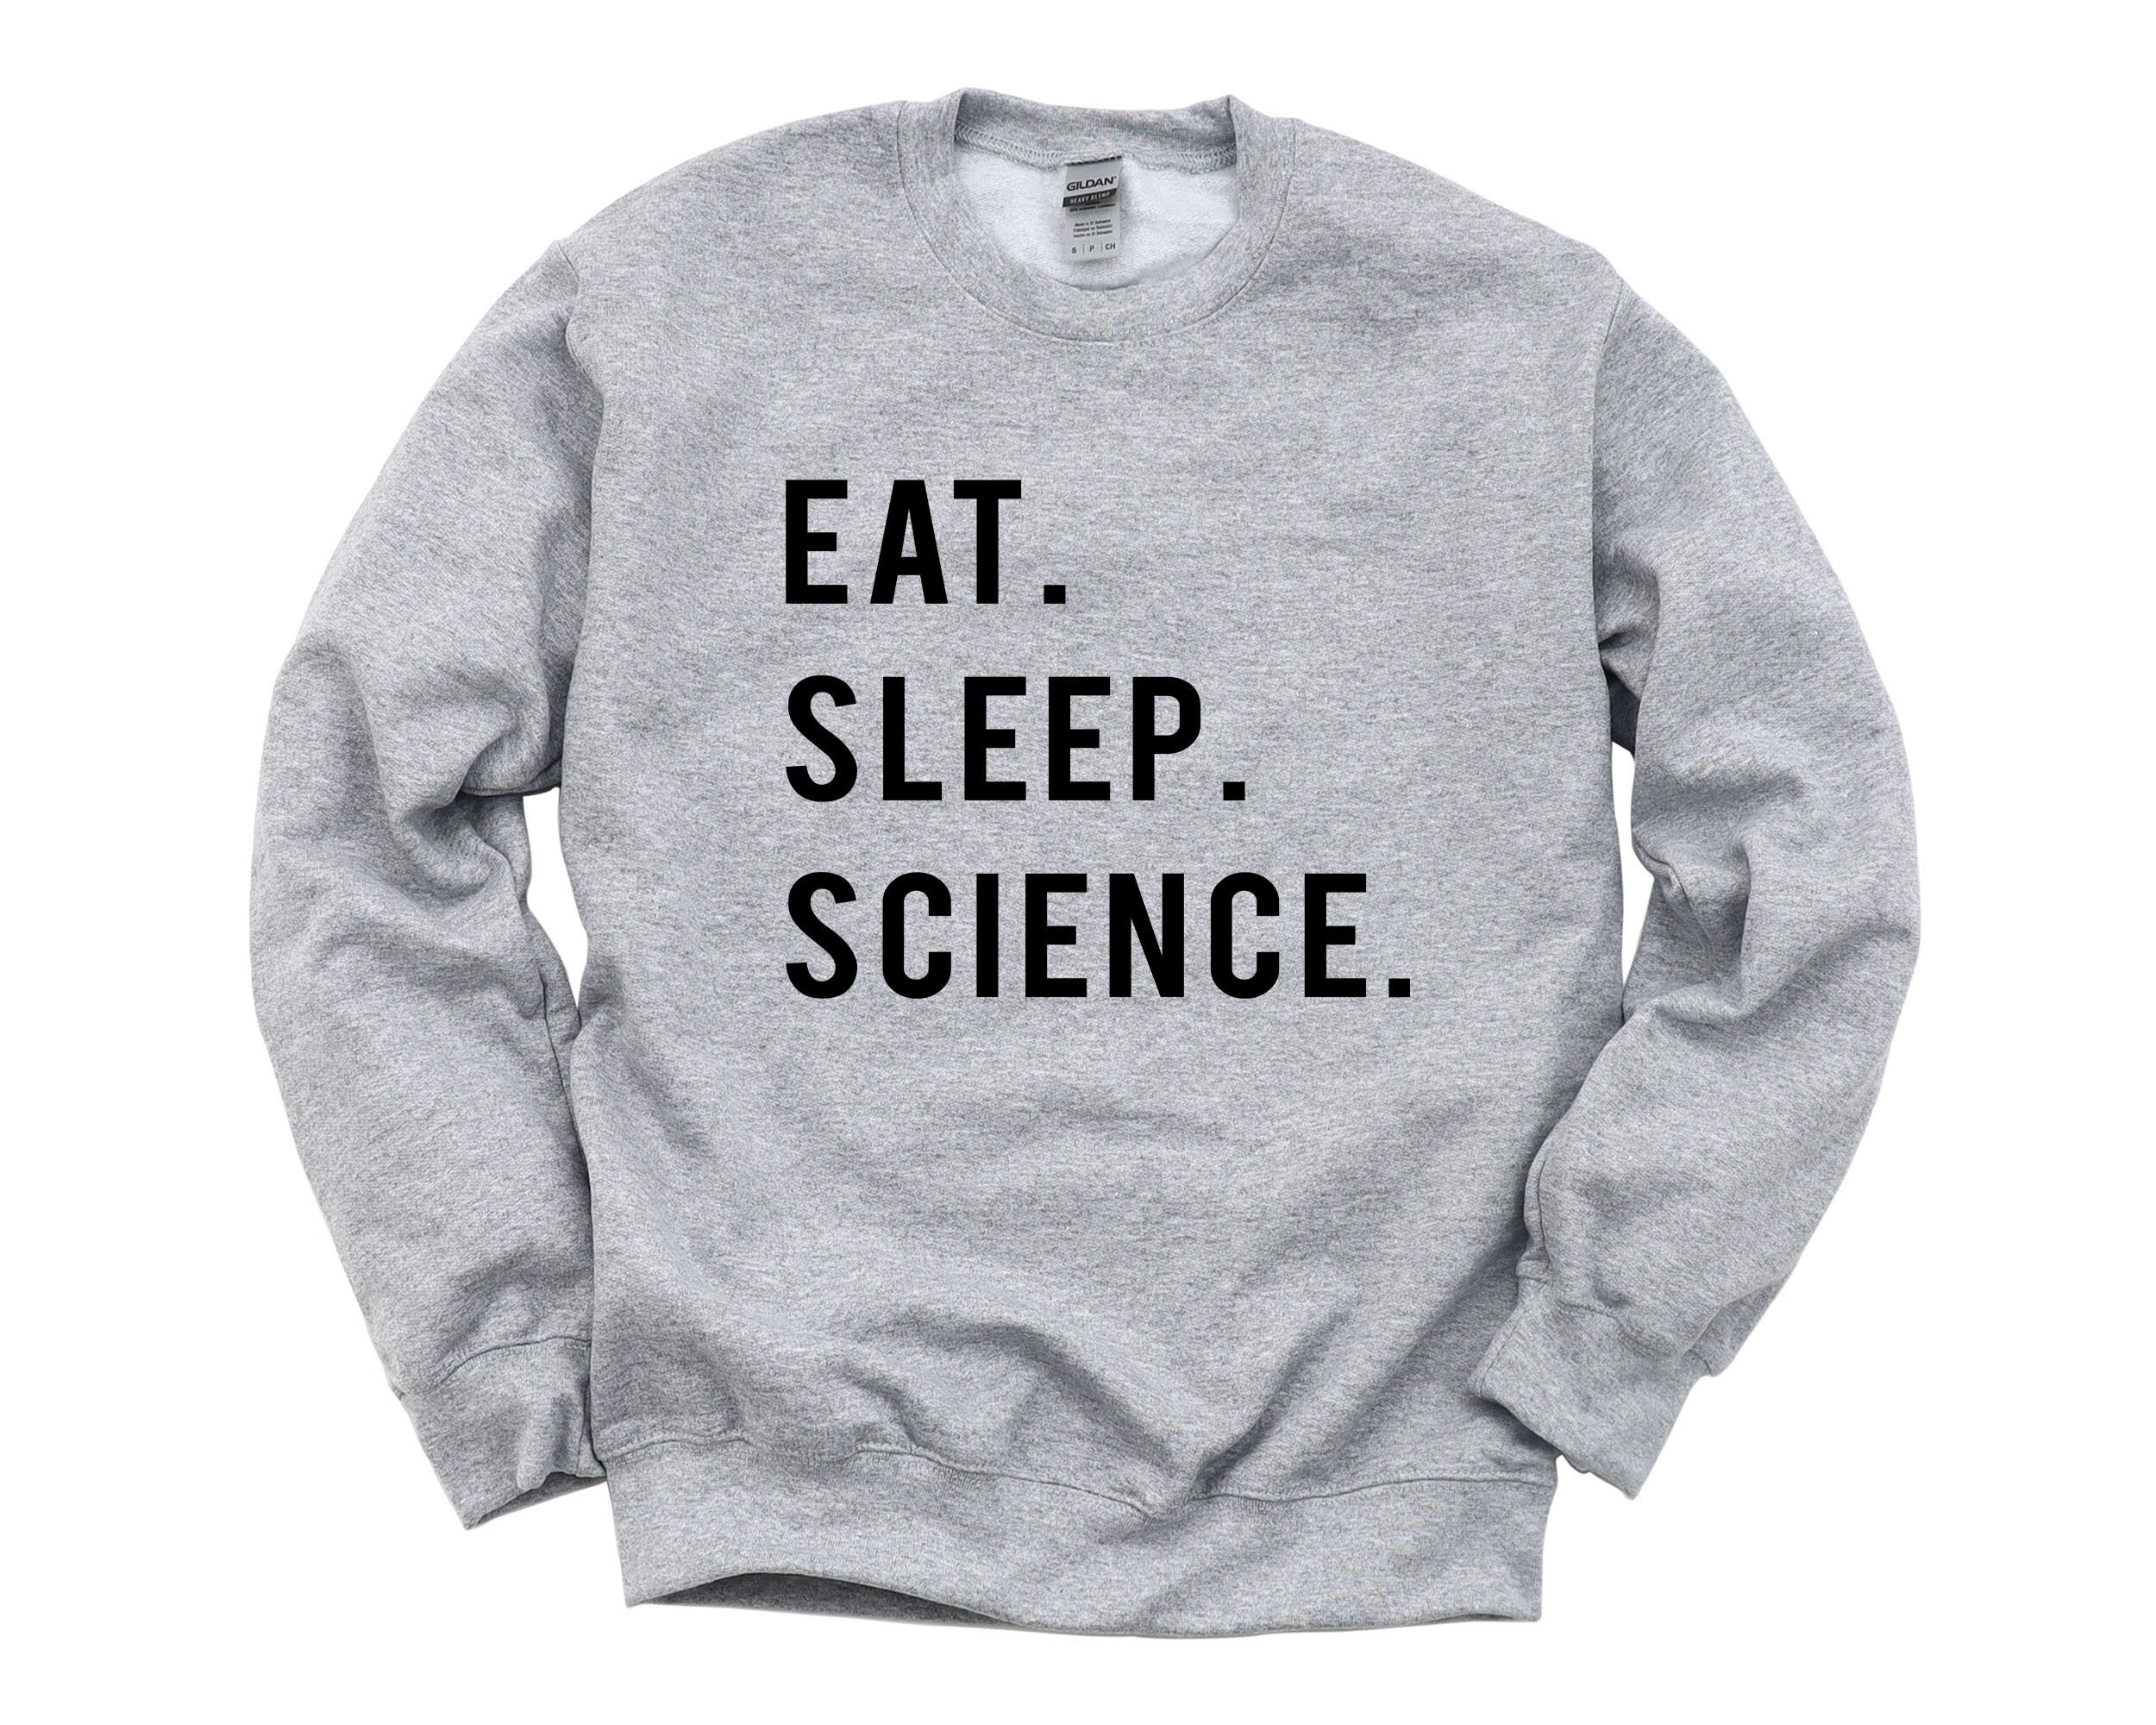 Science Sweatshirt, Gift For Students, Eat Sleep Sweatshirt - 749